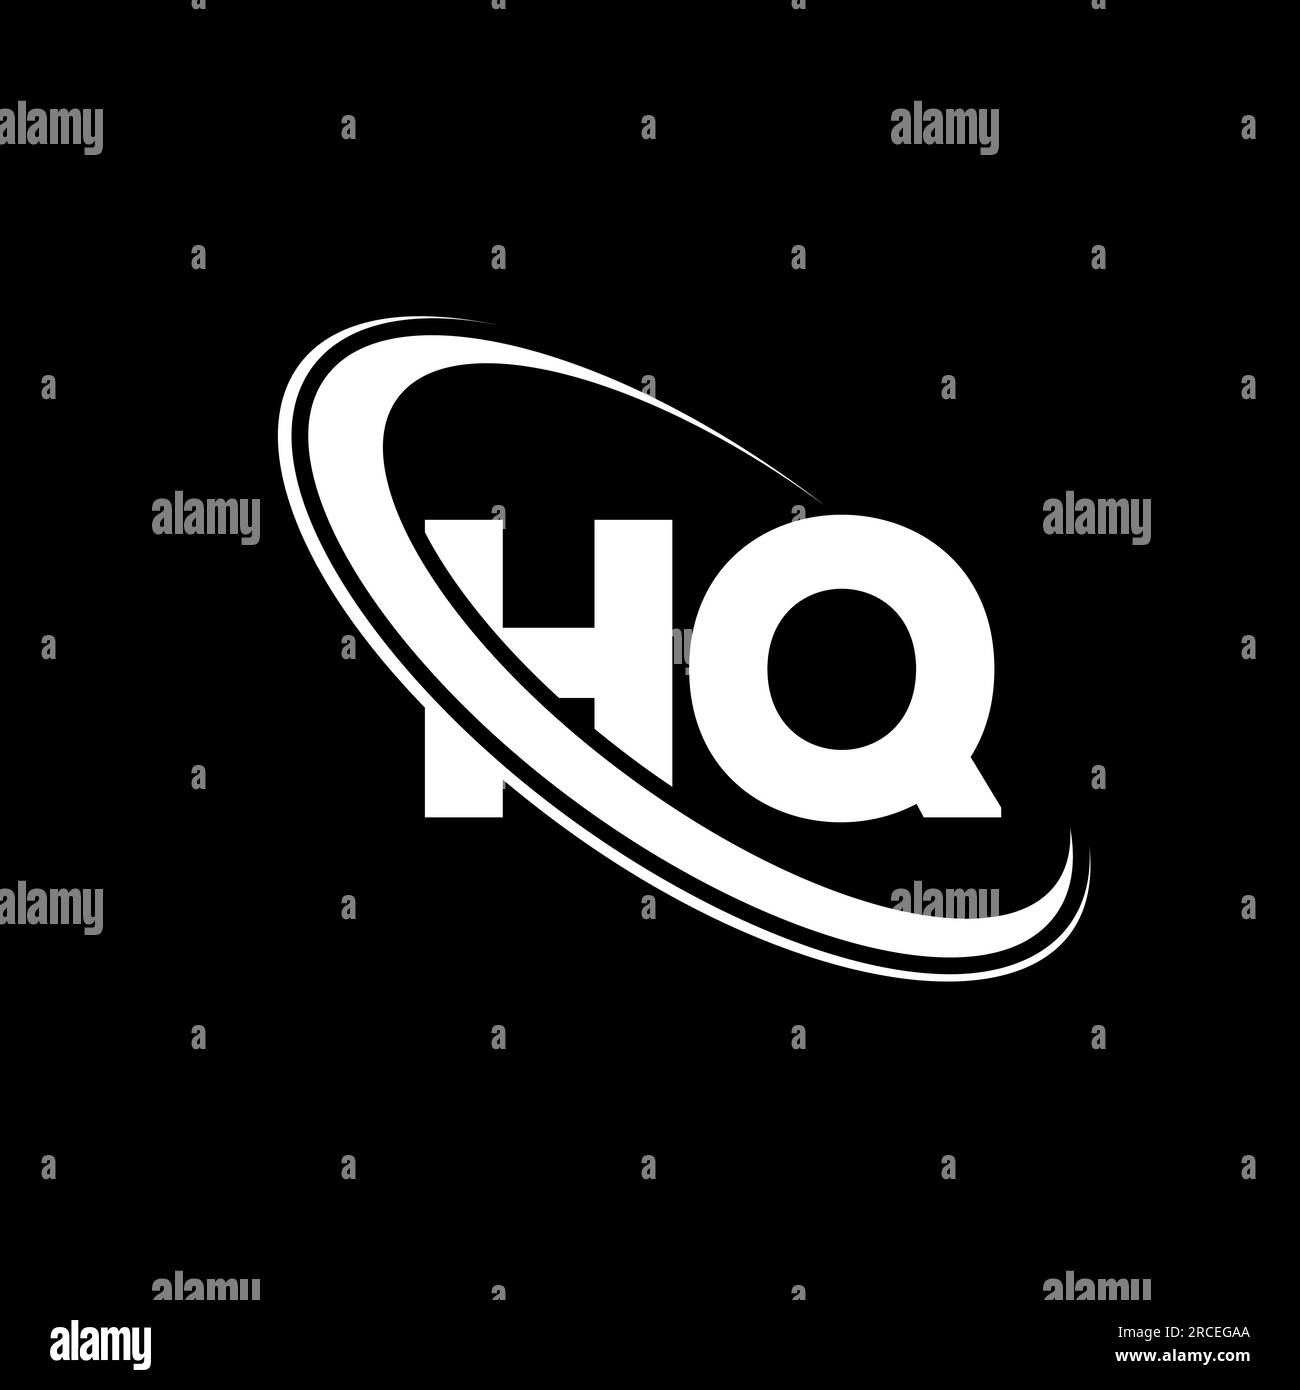 HQ logo. H Q design. White HQ letter. HQ/H Q letter logo design. Initial letter HQ linked circle uppercase monogram logo. Stock Vector